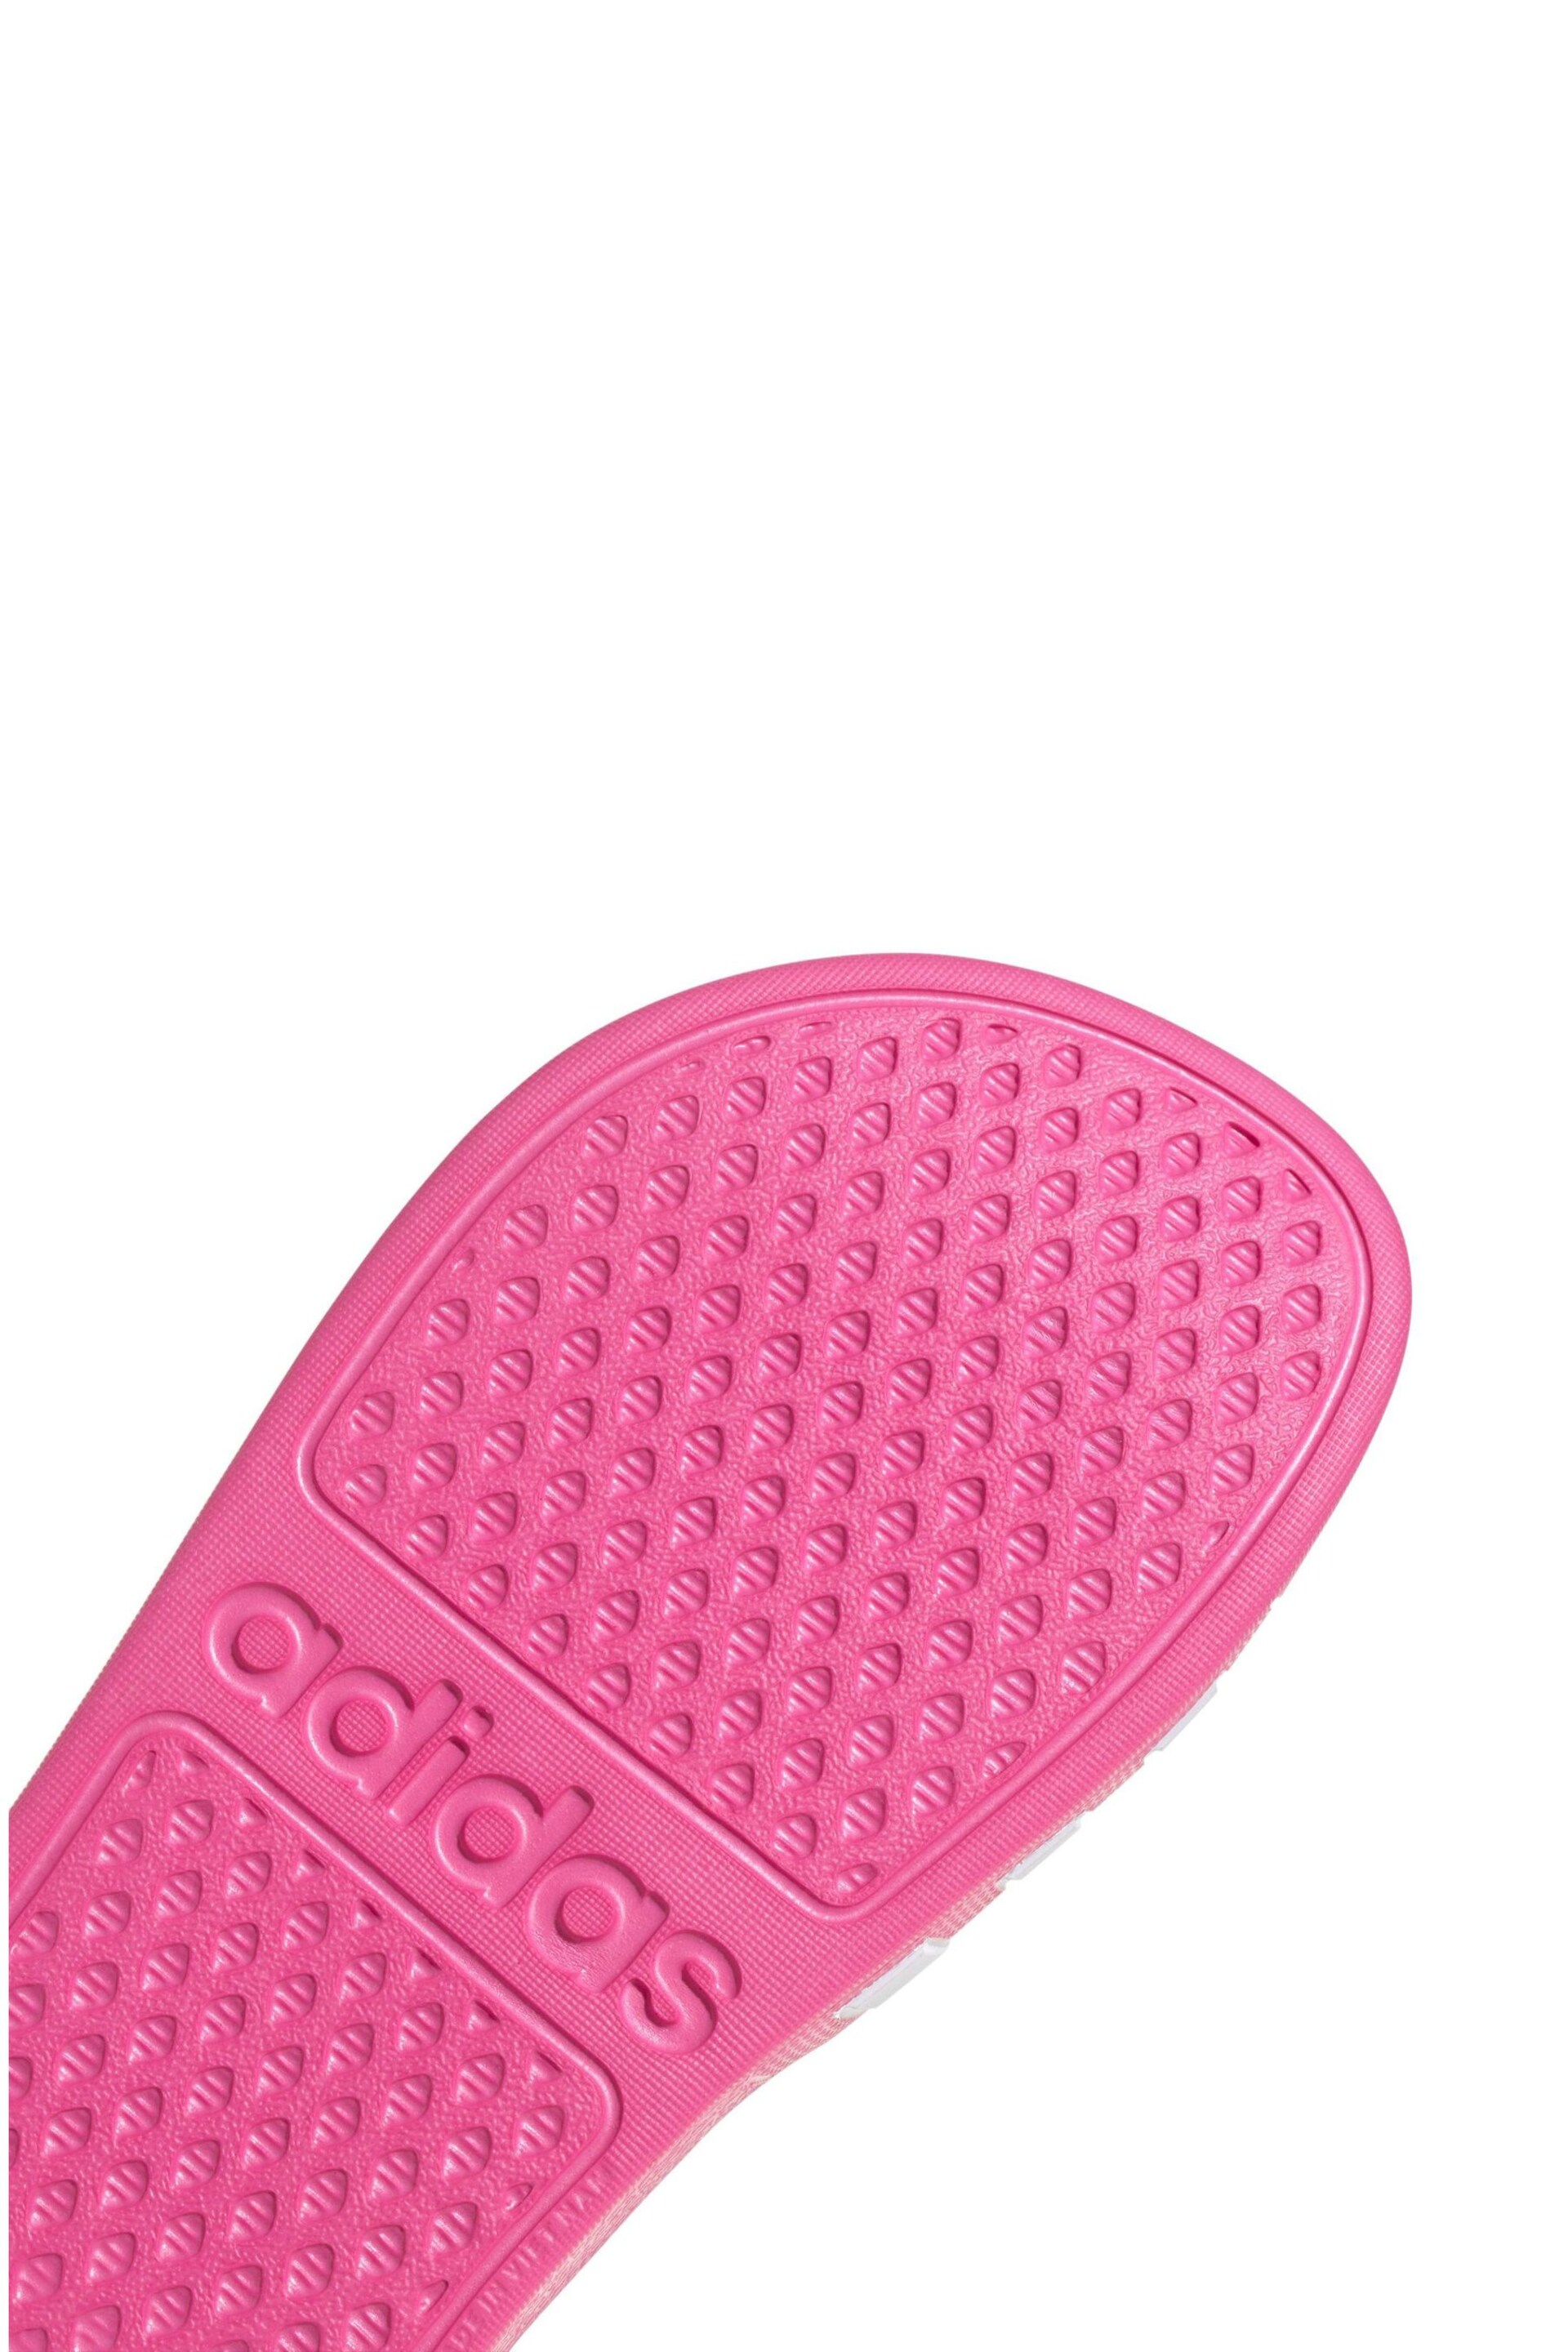 adidas Pink Adilette Aqua Kids Sandals - Image 6 of 6